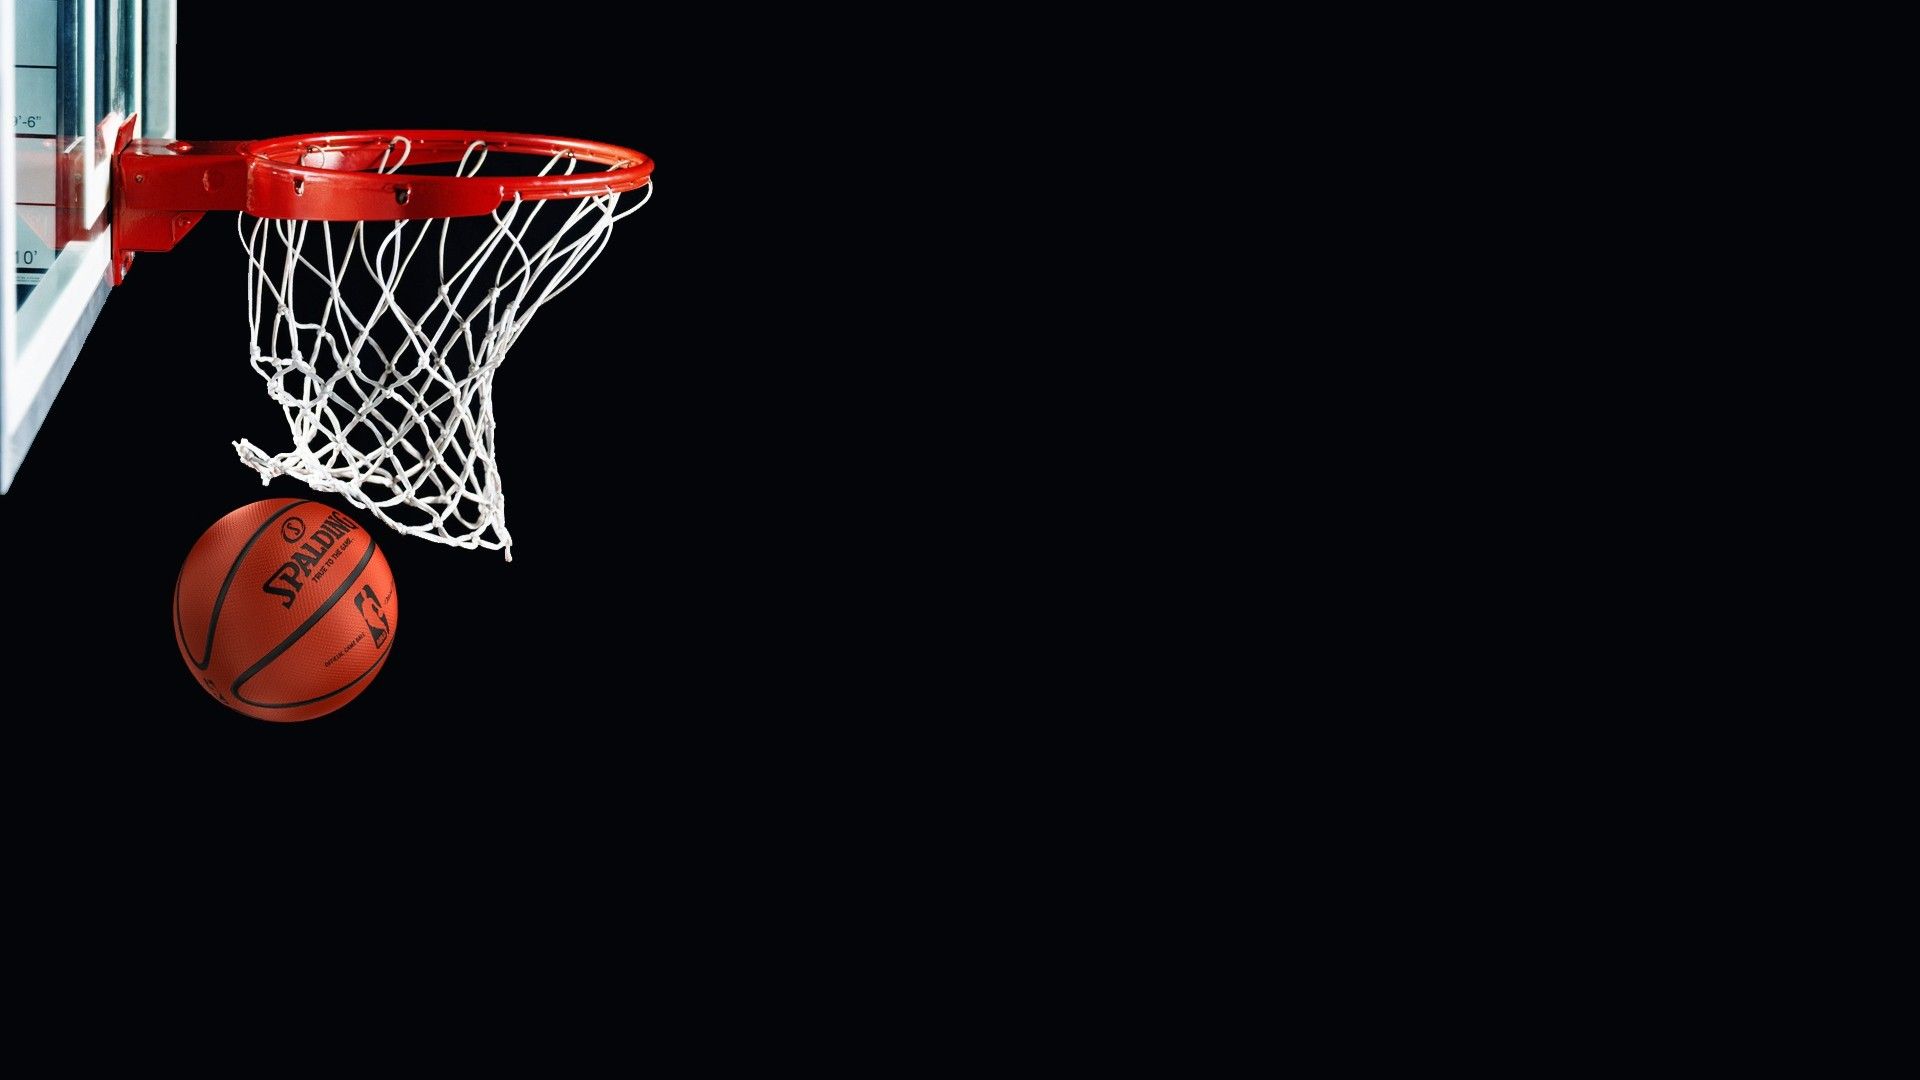 Fondos de pantalla de baloncesto - FondosMil